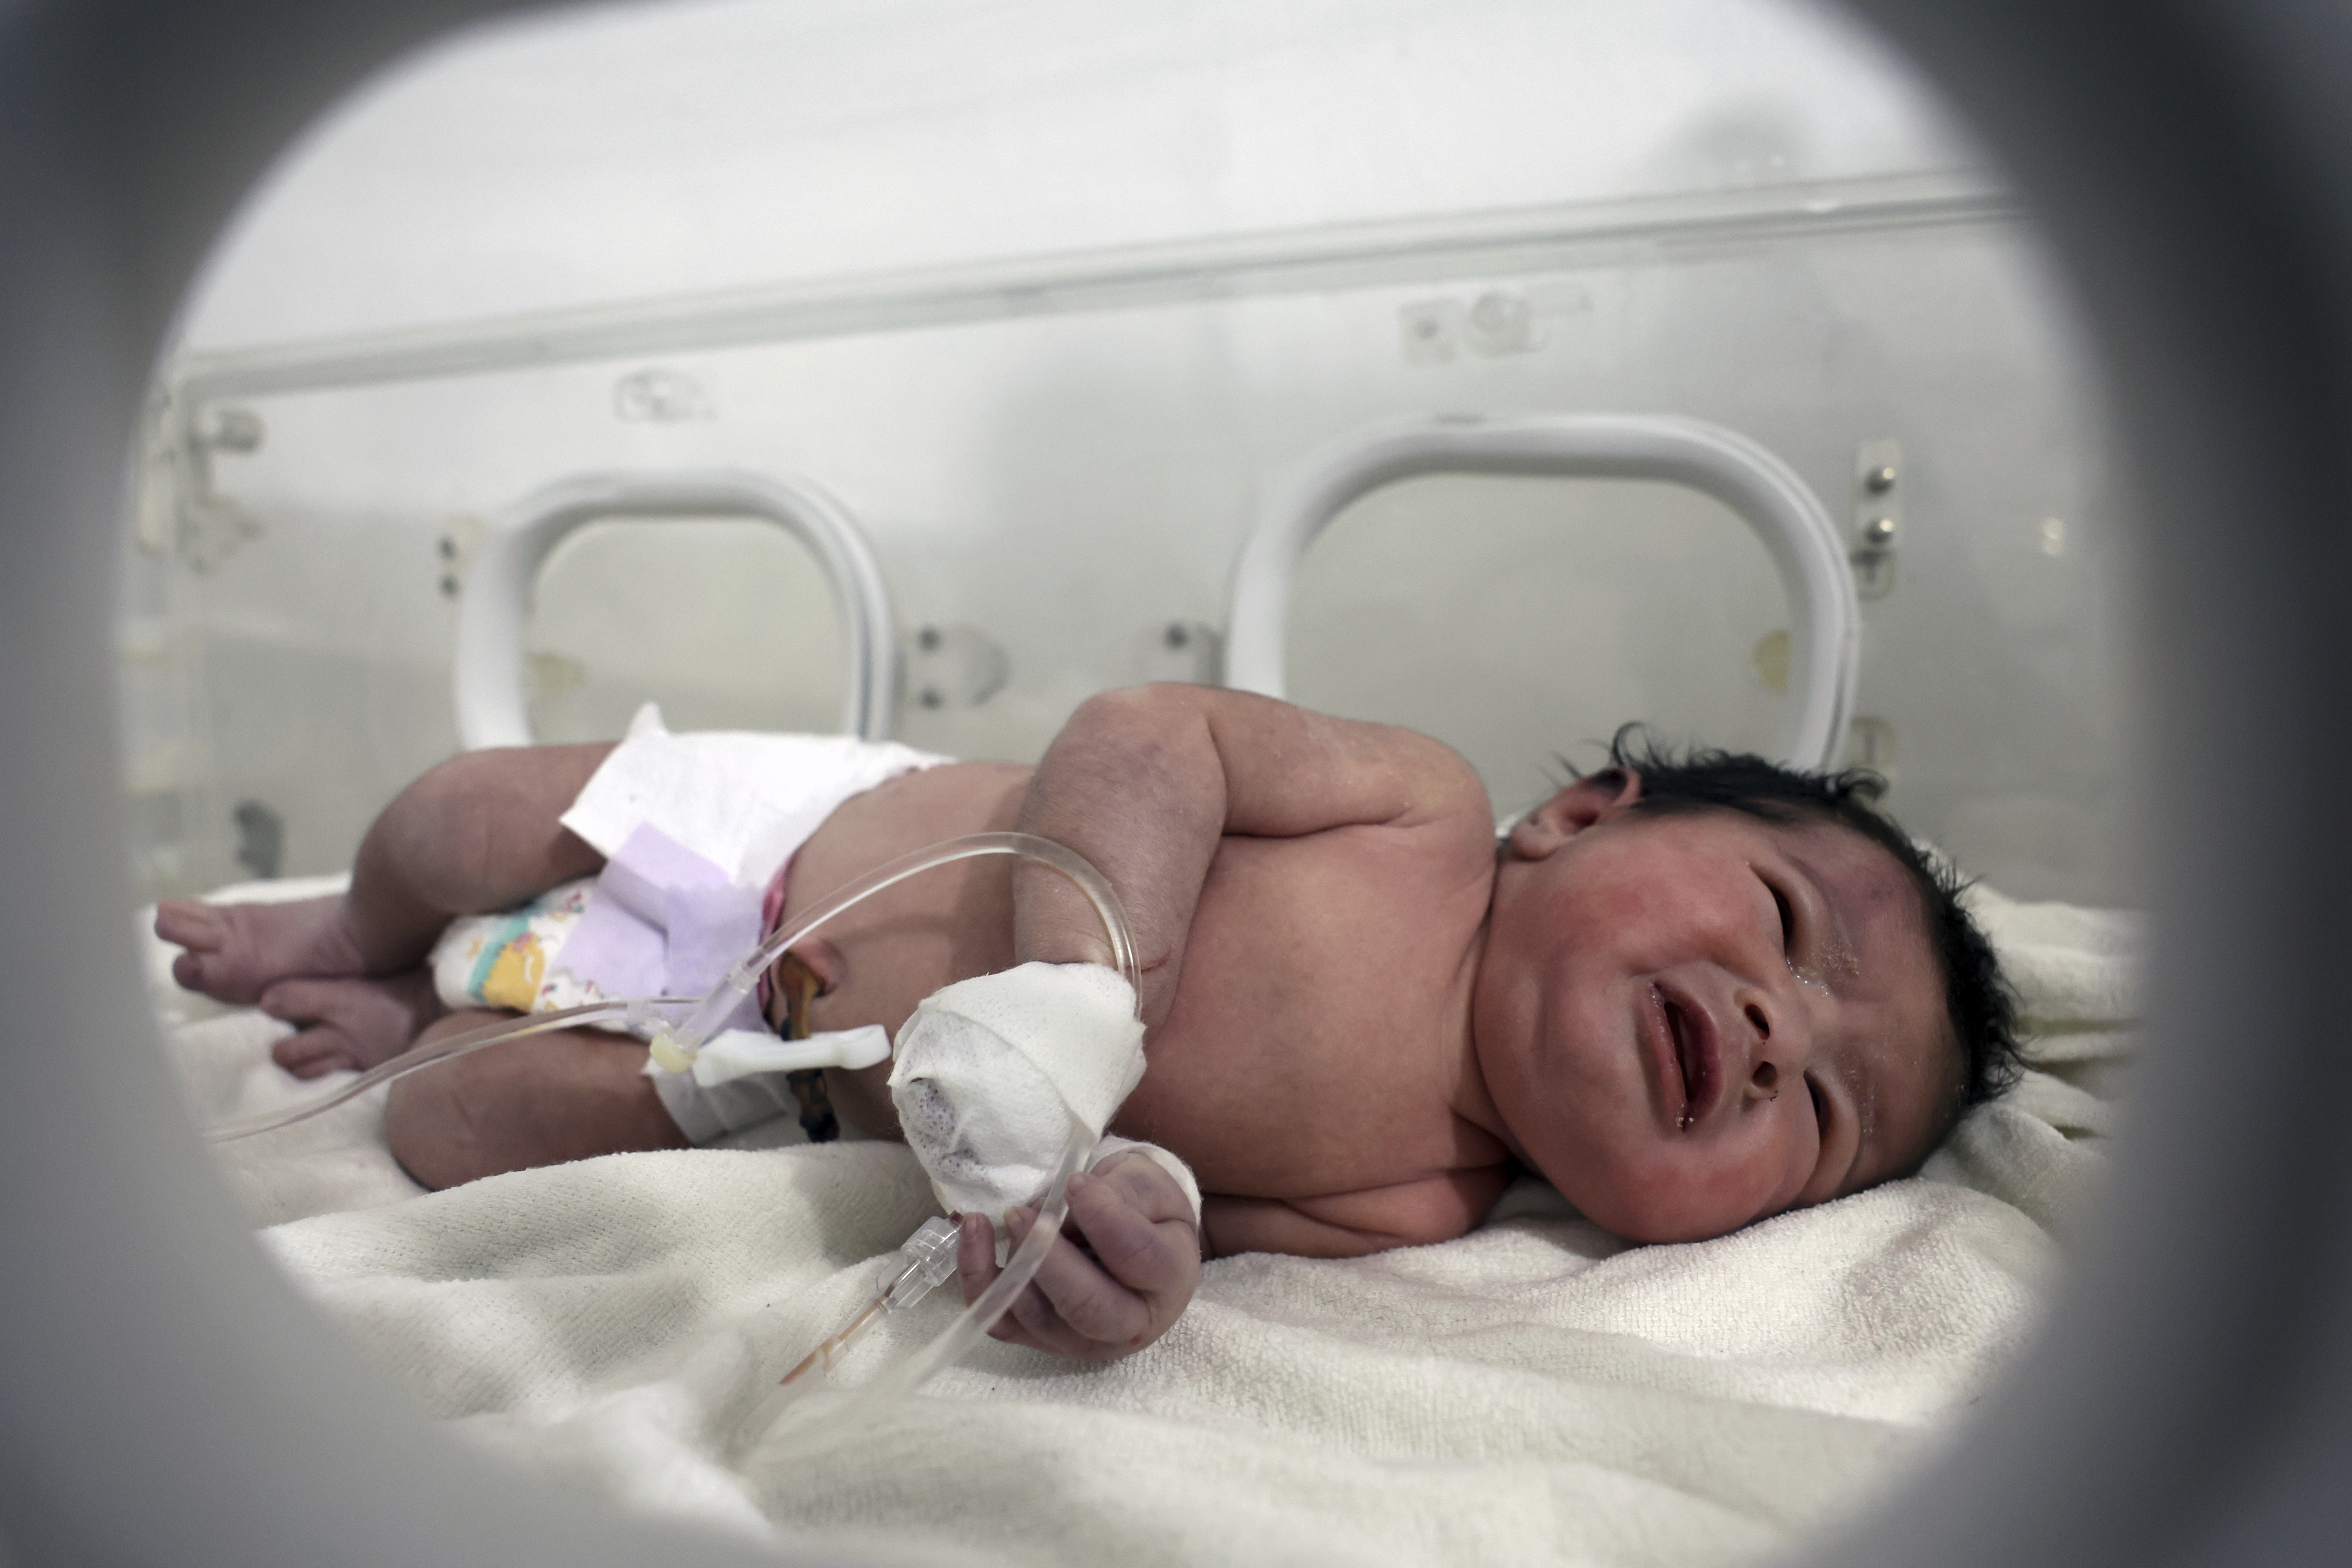 La bebé recién nacida, que nació en medio de las ruinas tras el sismo reciente en Siria, en el Hospital Pediátrico del pueblo de Afrin, en la provincia de Alepo en Siria, el 7 de febrero de 2023 (Foto AP /Ghaith Alsayed)